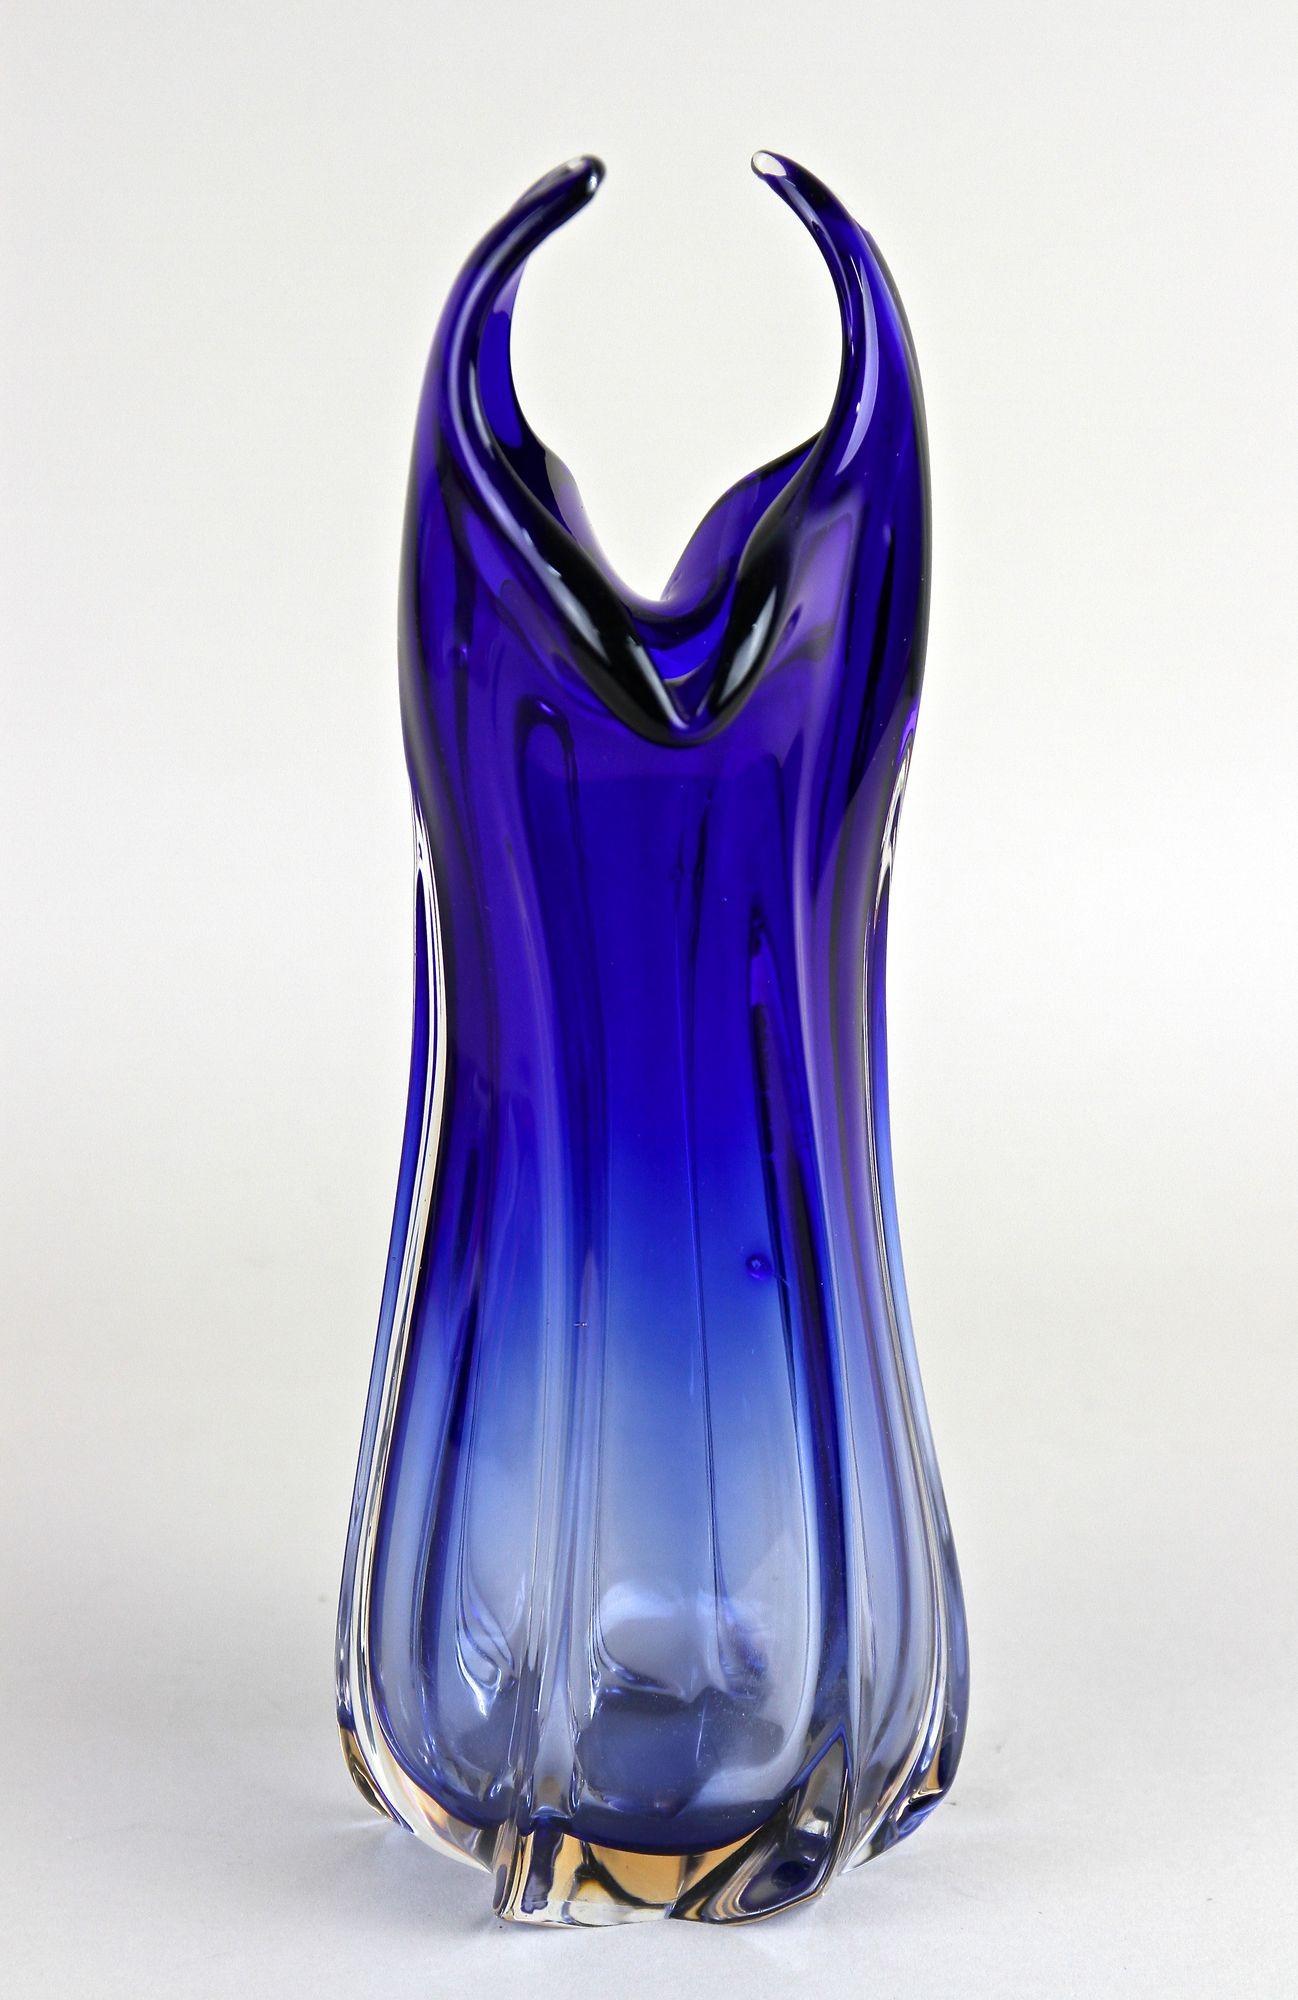 Contemporary Dark Blue Murano Glass Vase, Italy circa 1970 For Sale 1